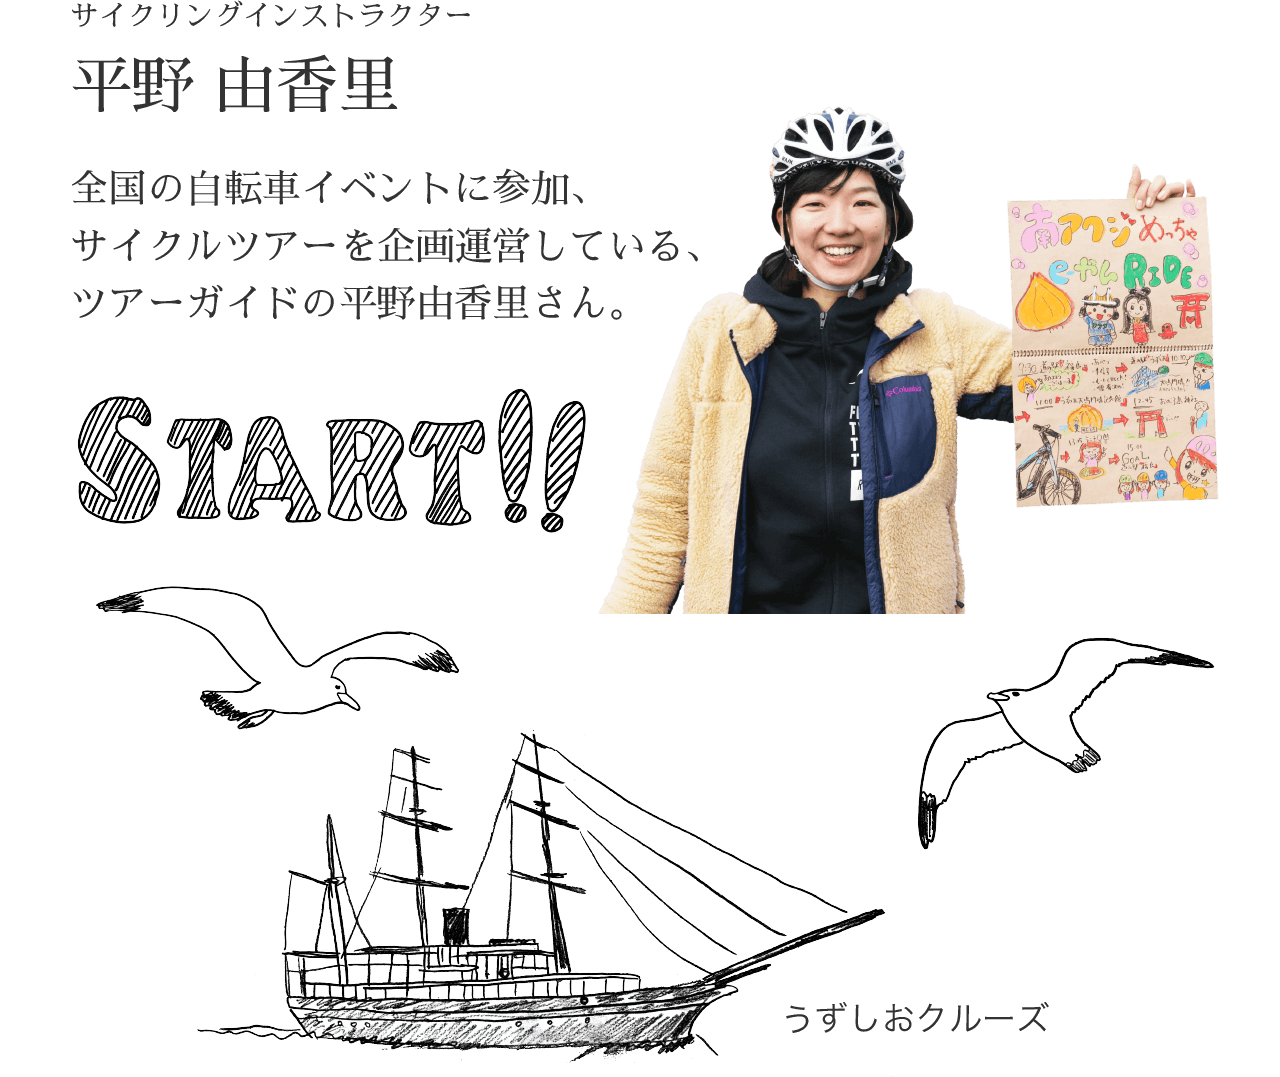 START!! サイクリングインストラクター平野 由香里 全国の自転車イベントに参加、サイクルツアーを企画運営している、ツアーガイドの平野由香里さん。